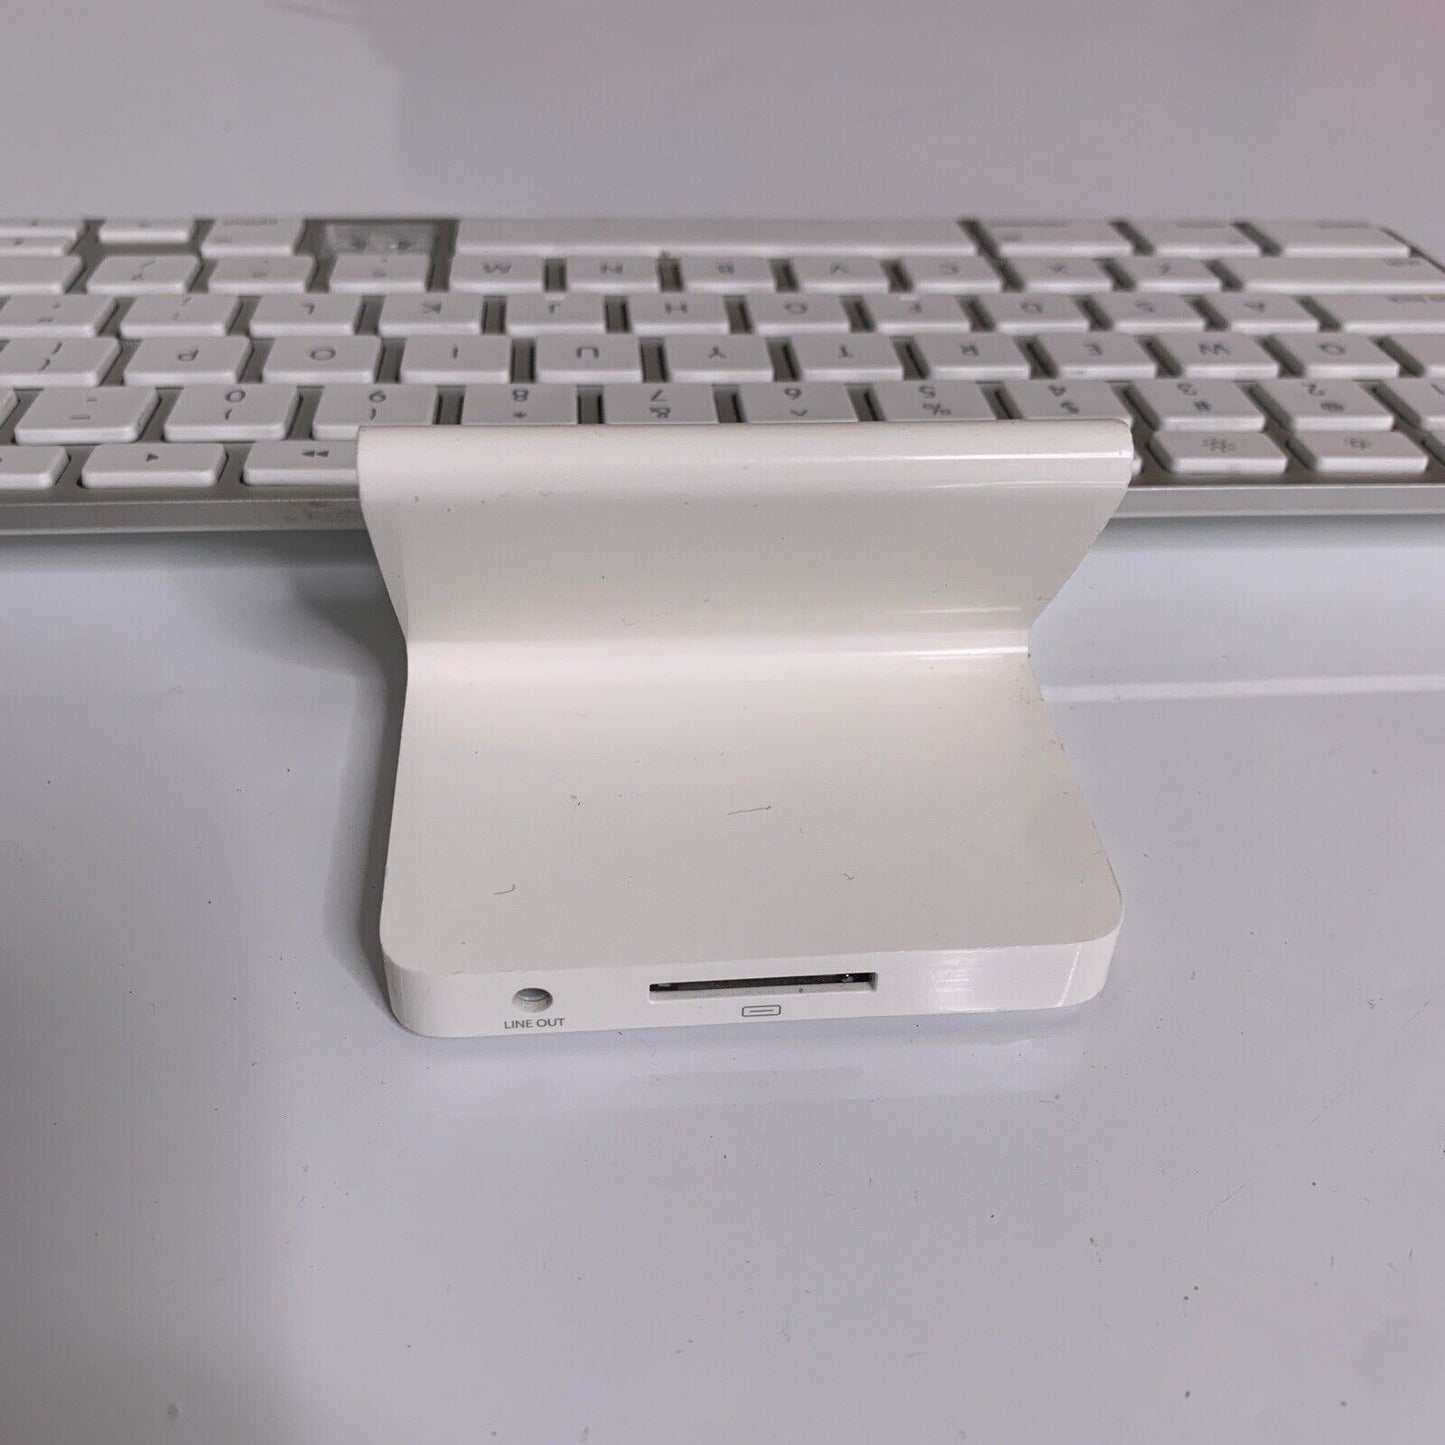 Apple iPad Keyboard Dock A1359 30-pin Connector